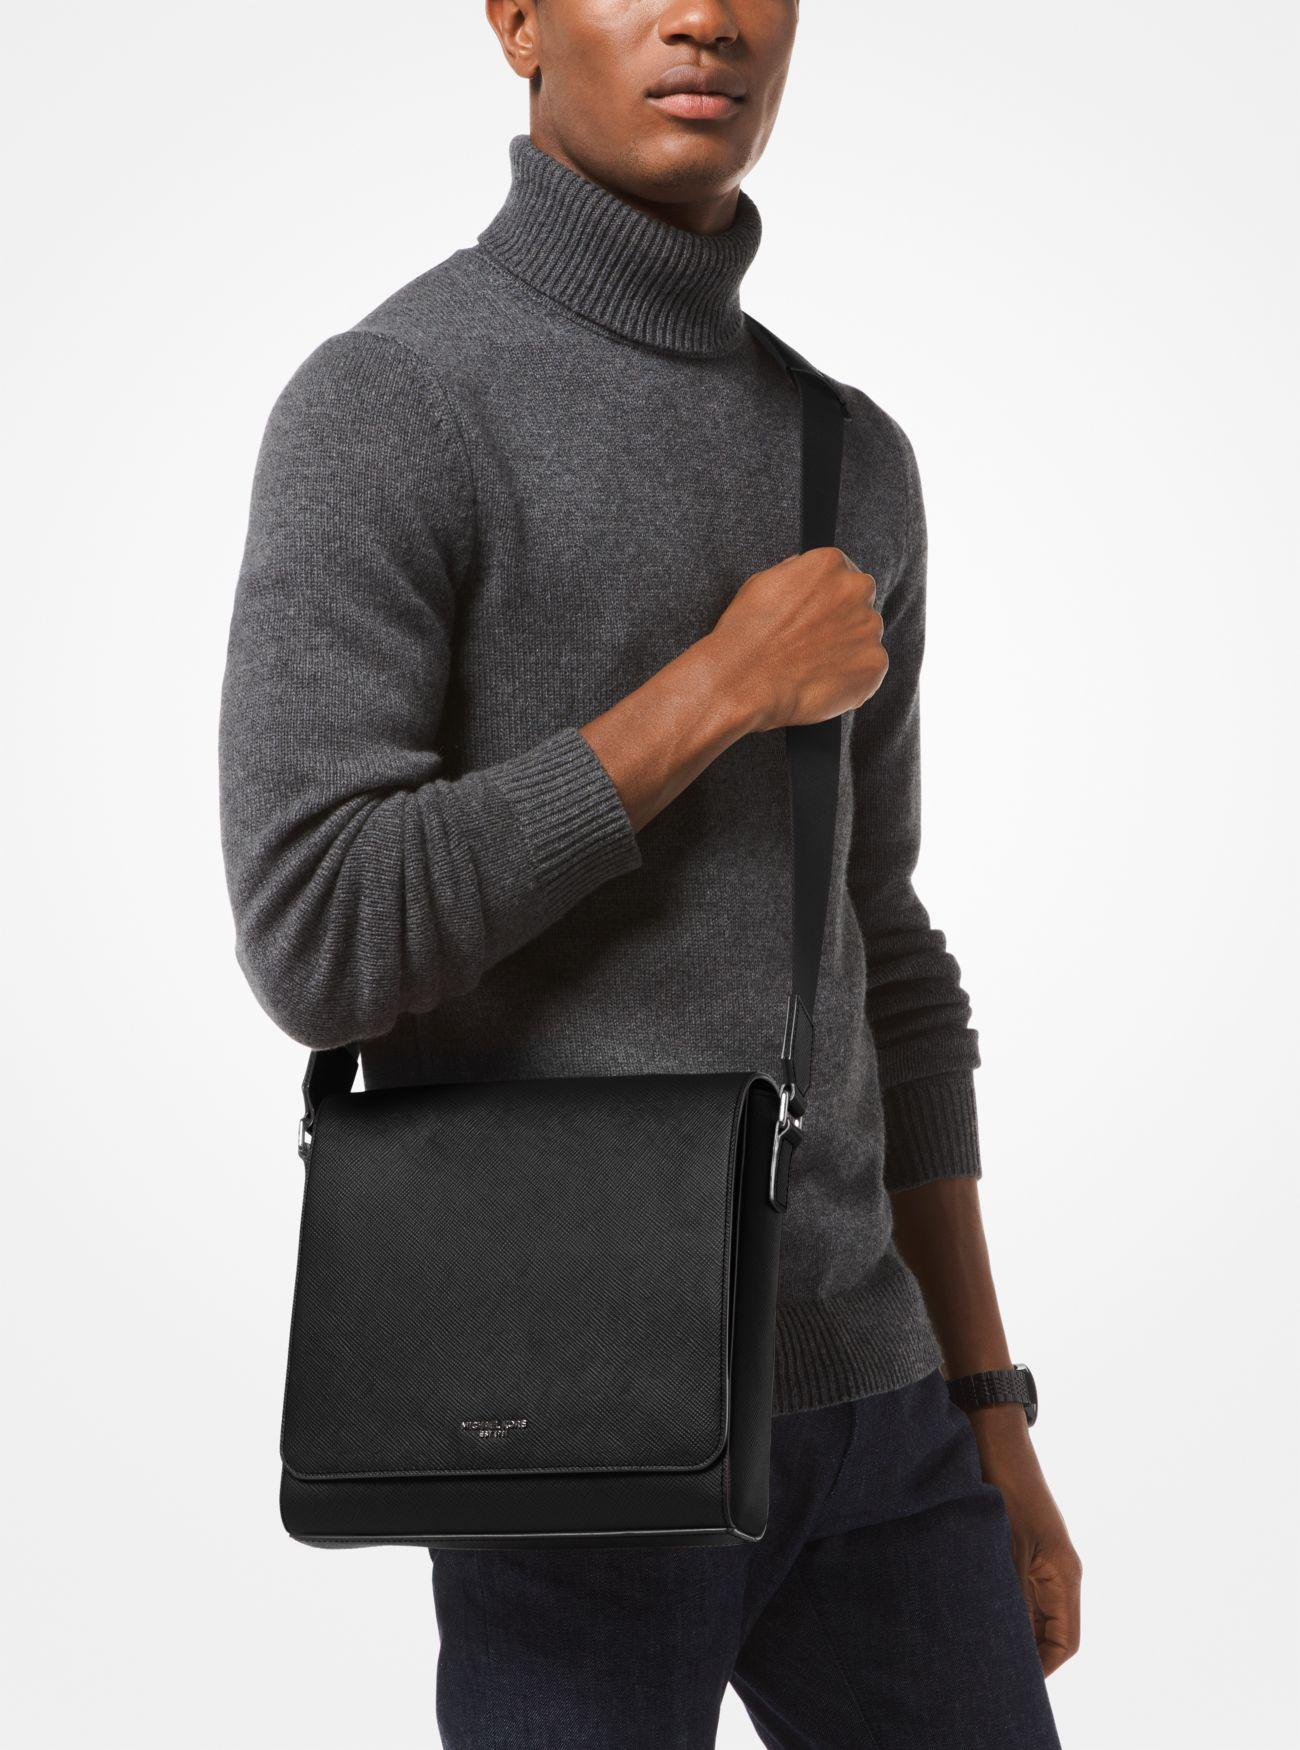 Michael Kors Harrison Medium Leather Messenger Bag in Black for Men - Lyst